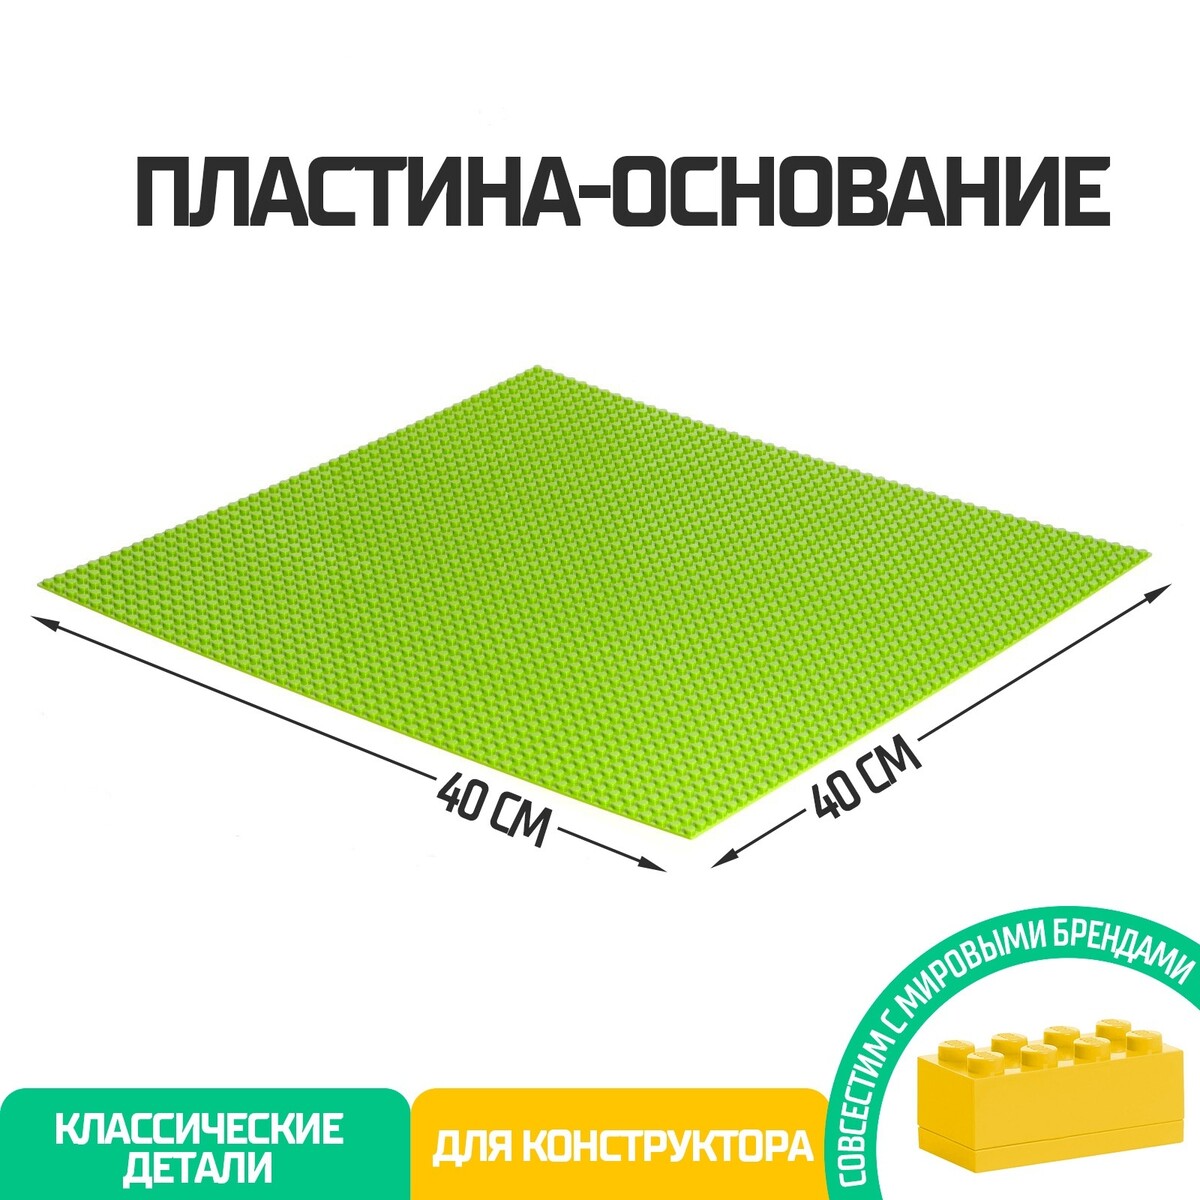 Пластина-основание для конструктора, 40 × 40 см, цвет салатовый пластина основание для конструктора 40 х 40 см зеленый